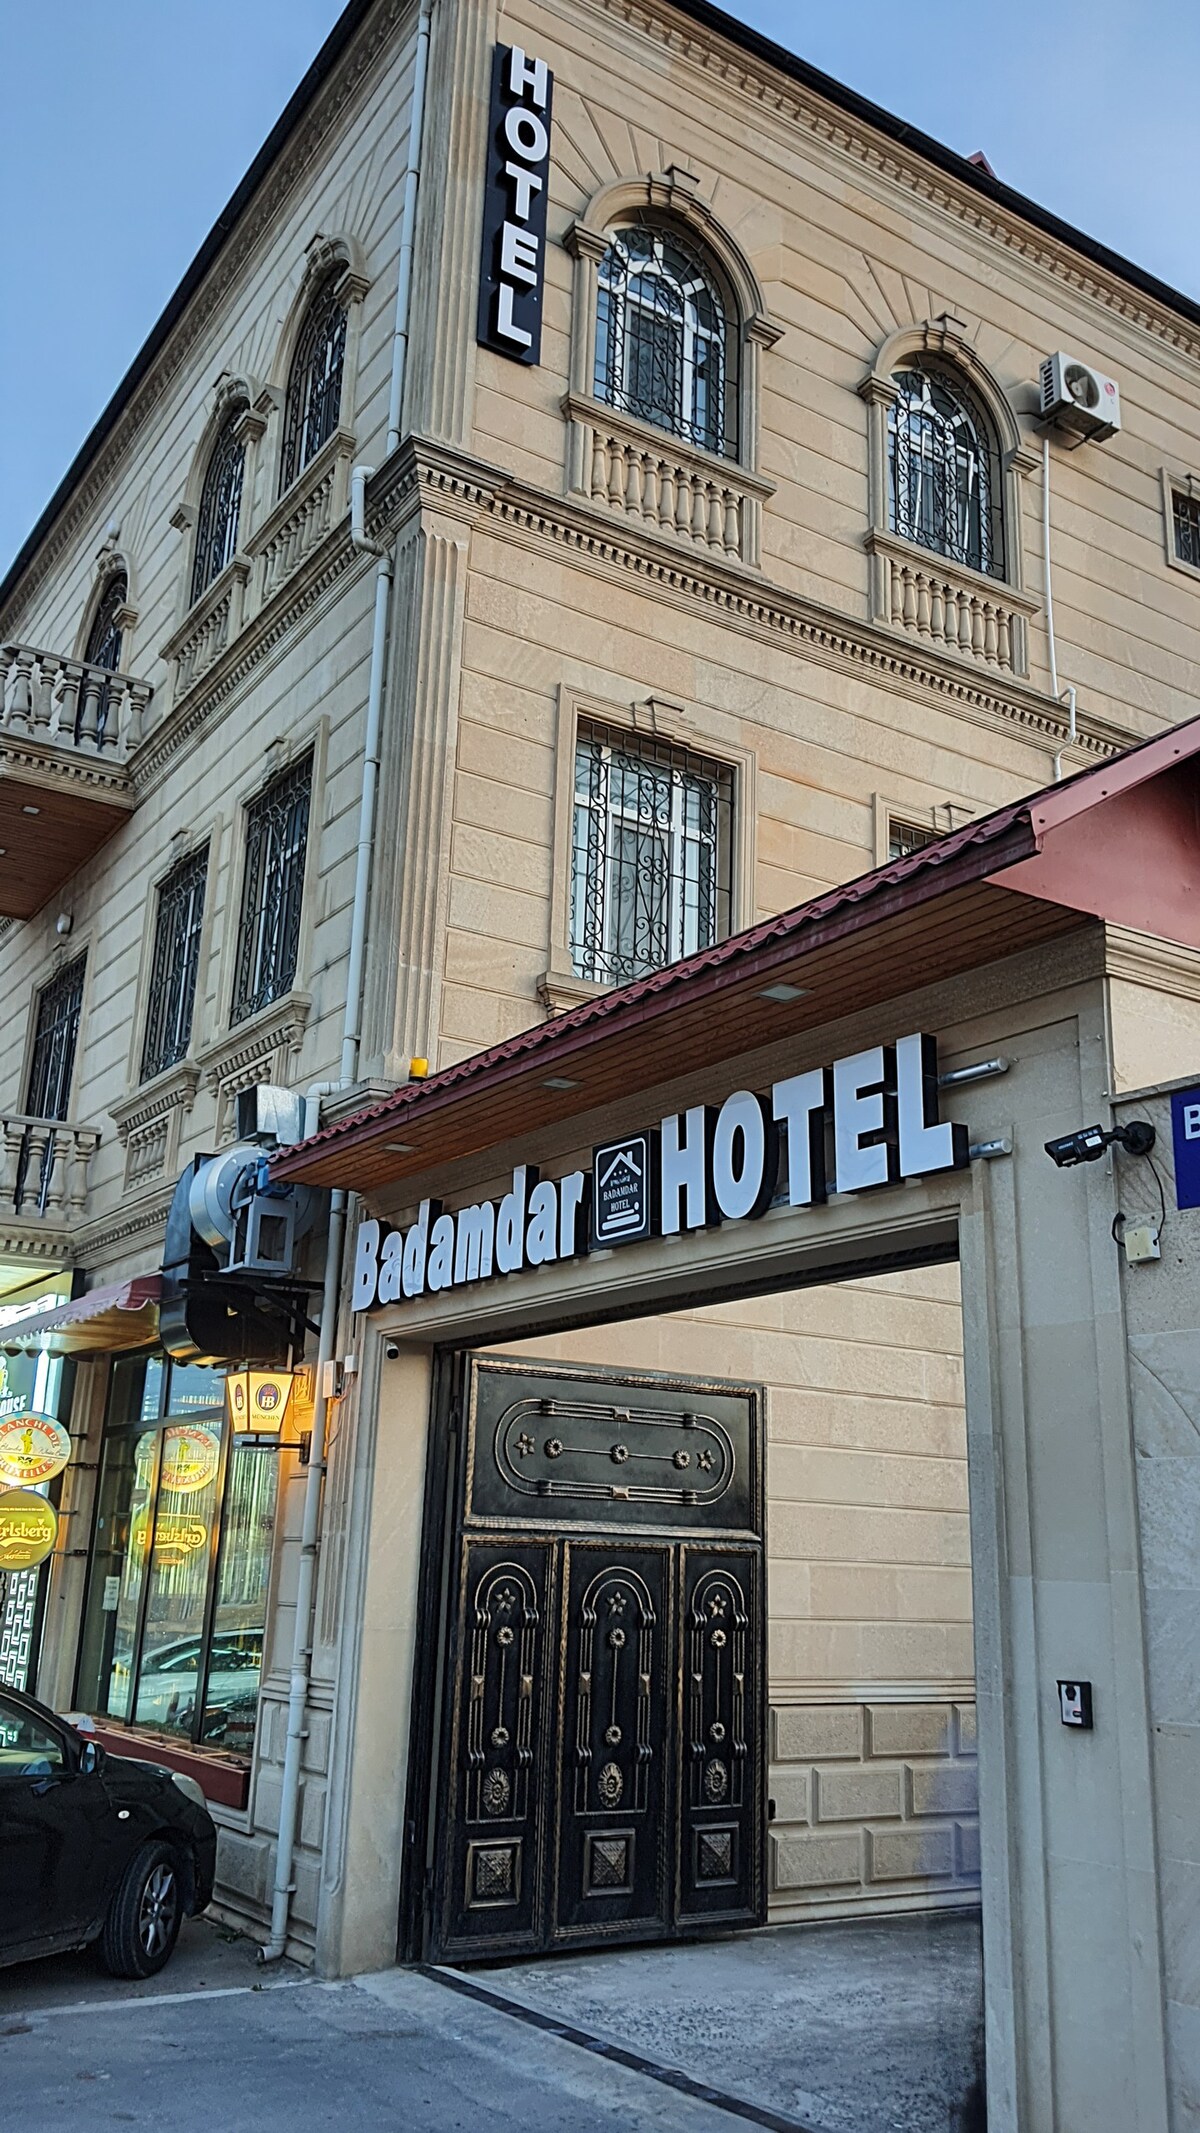 Badamdar酒店2人房（ 206 ）